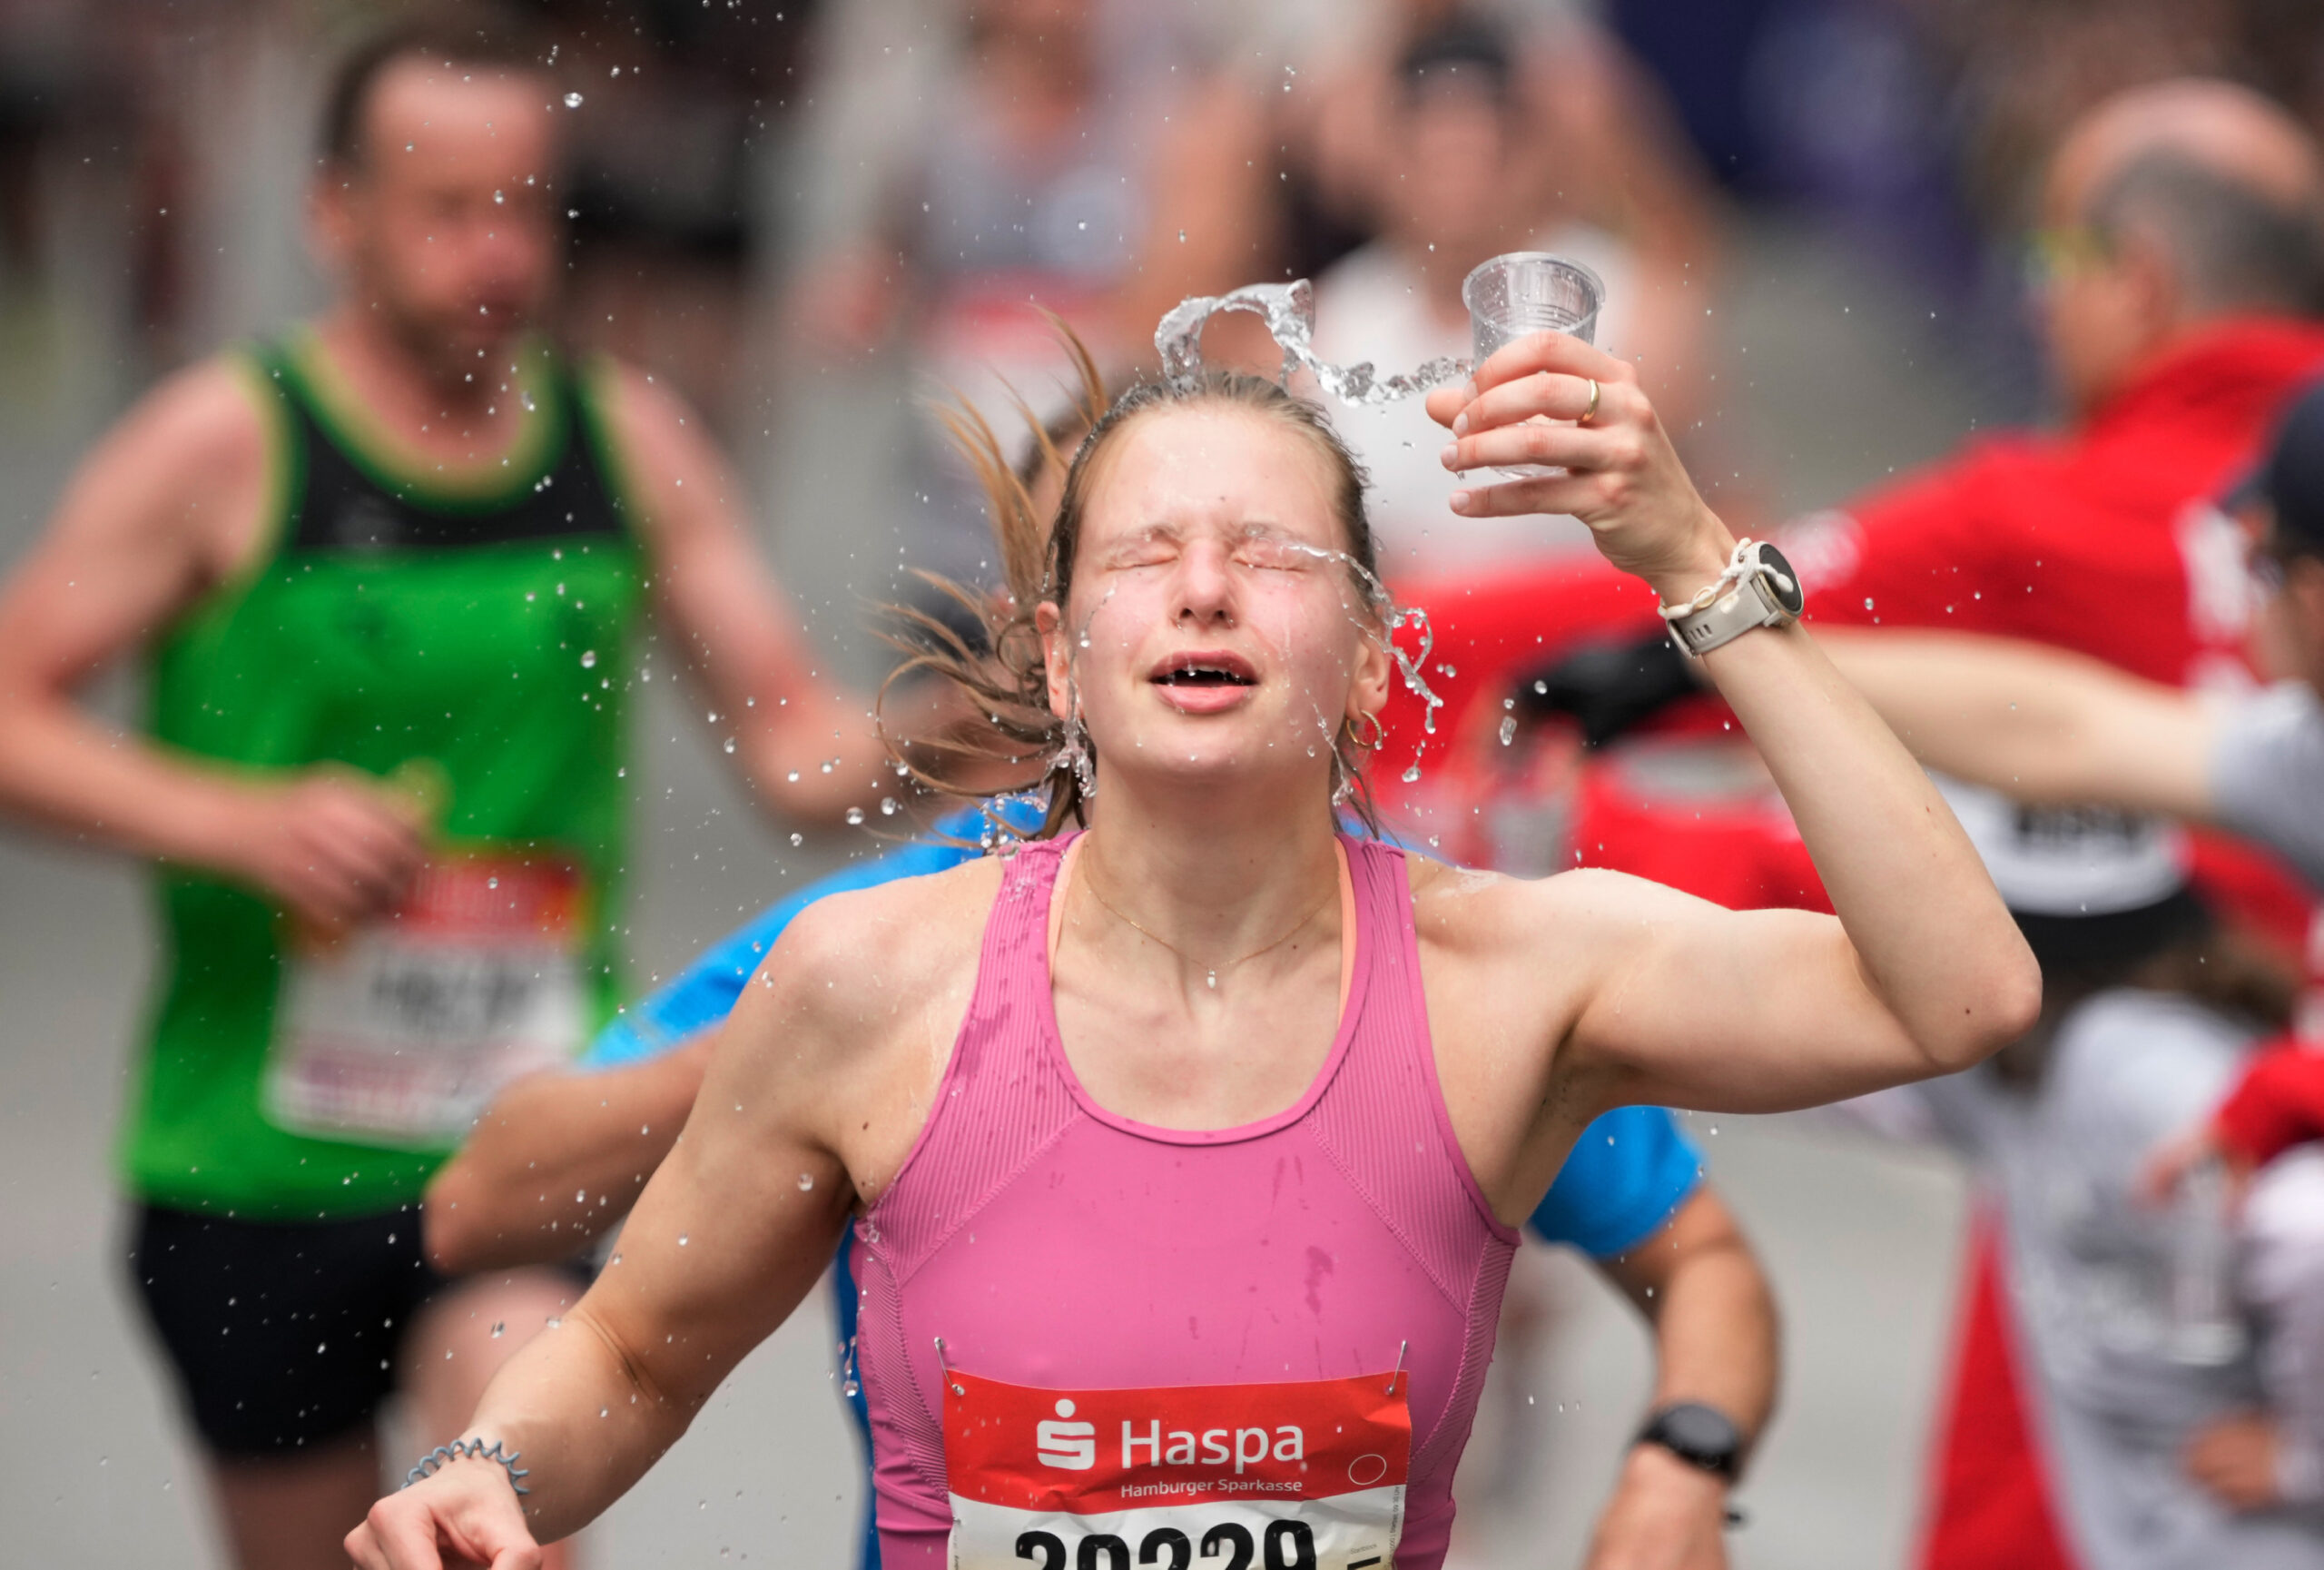 Marathonläuferin kippt sich Wasser über den Kopf